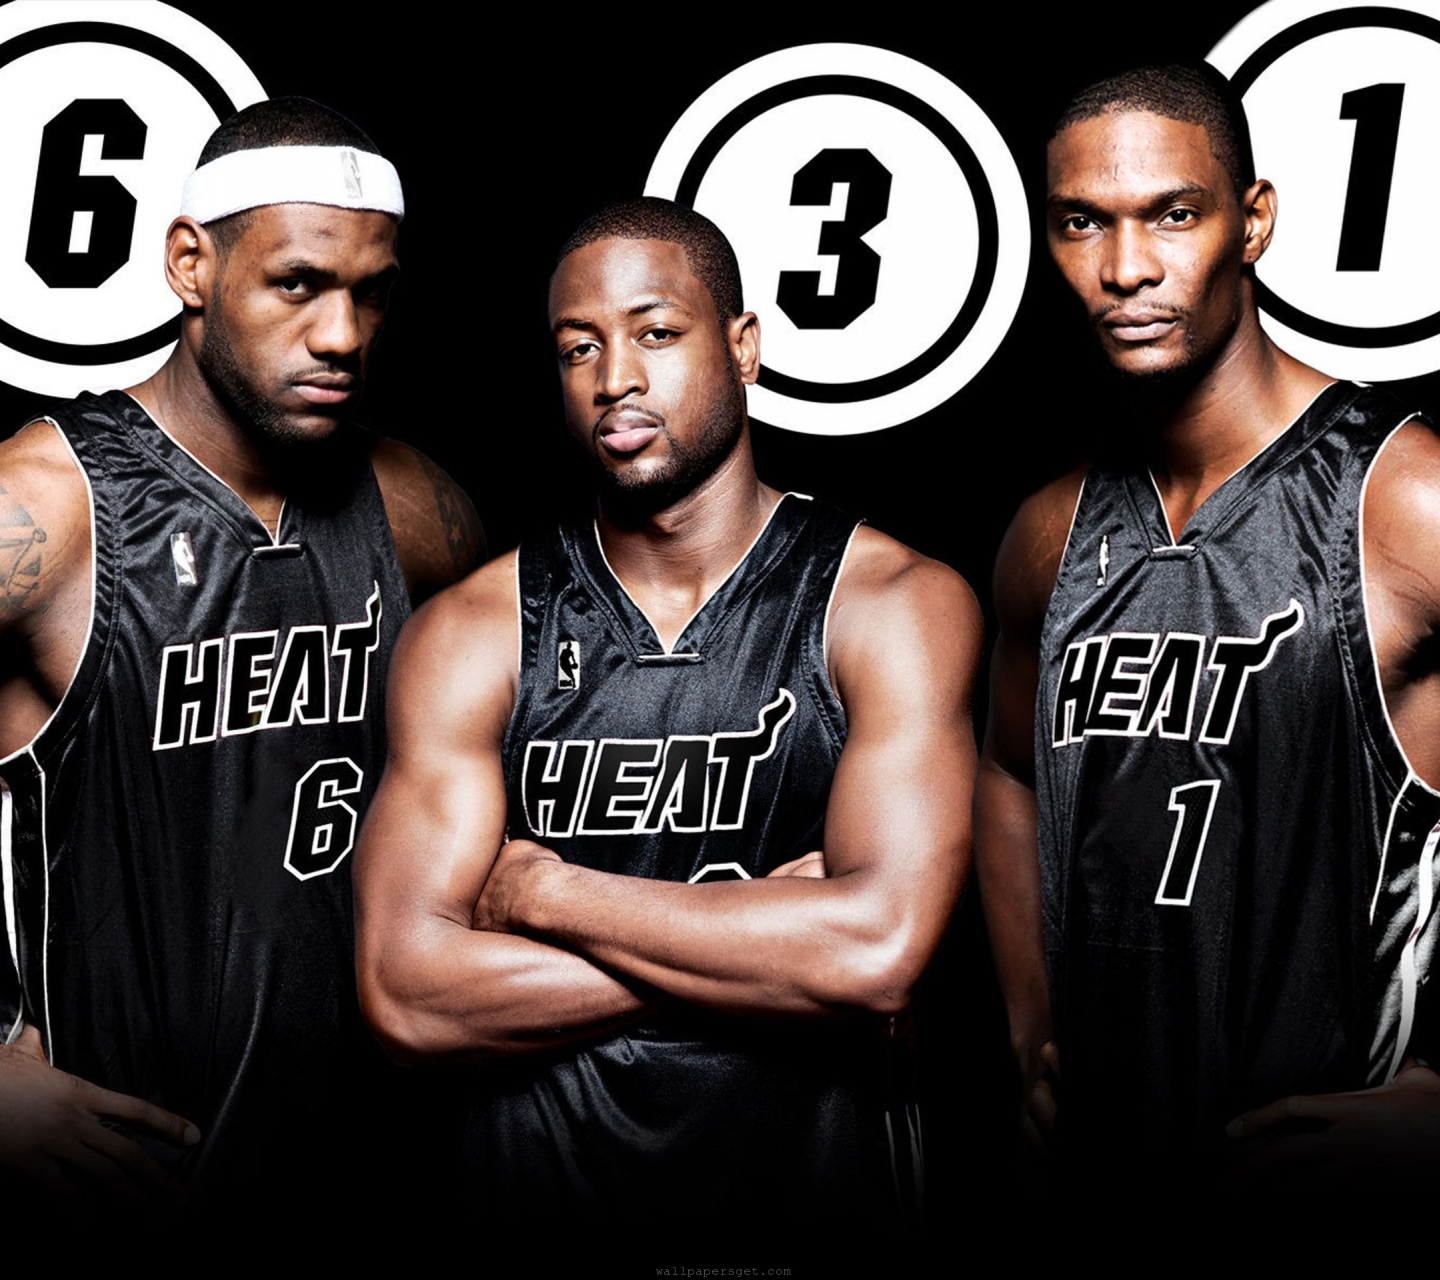 Miami Heat Nba American Basketball Black Uniforms Dwyane Wade Lebron James Chris Bosh